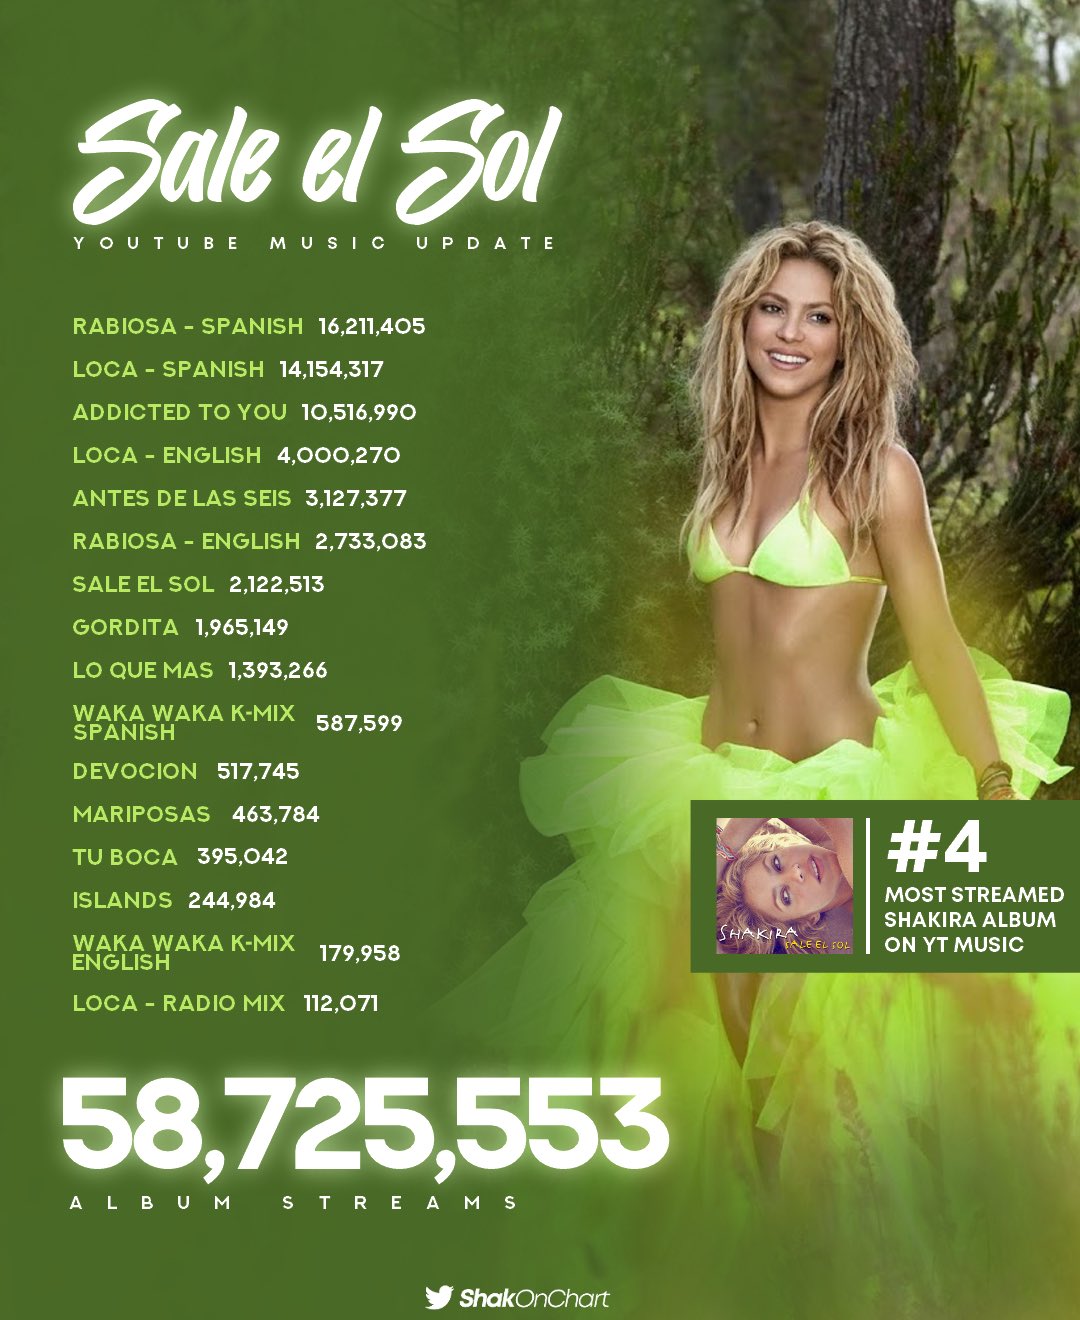 joyería Transparentemente educar Shakira Charts on Twitter: ""Sale El Sol" — YouTube Music Update: — Sale El  Sol is Shakira's #4 most streamed album in YT Music.  https://t.co/NfwYltOtuO" / Twitter